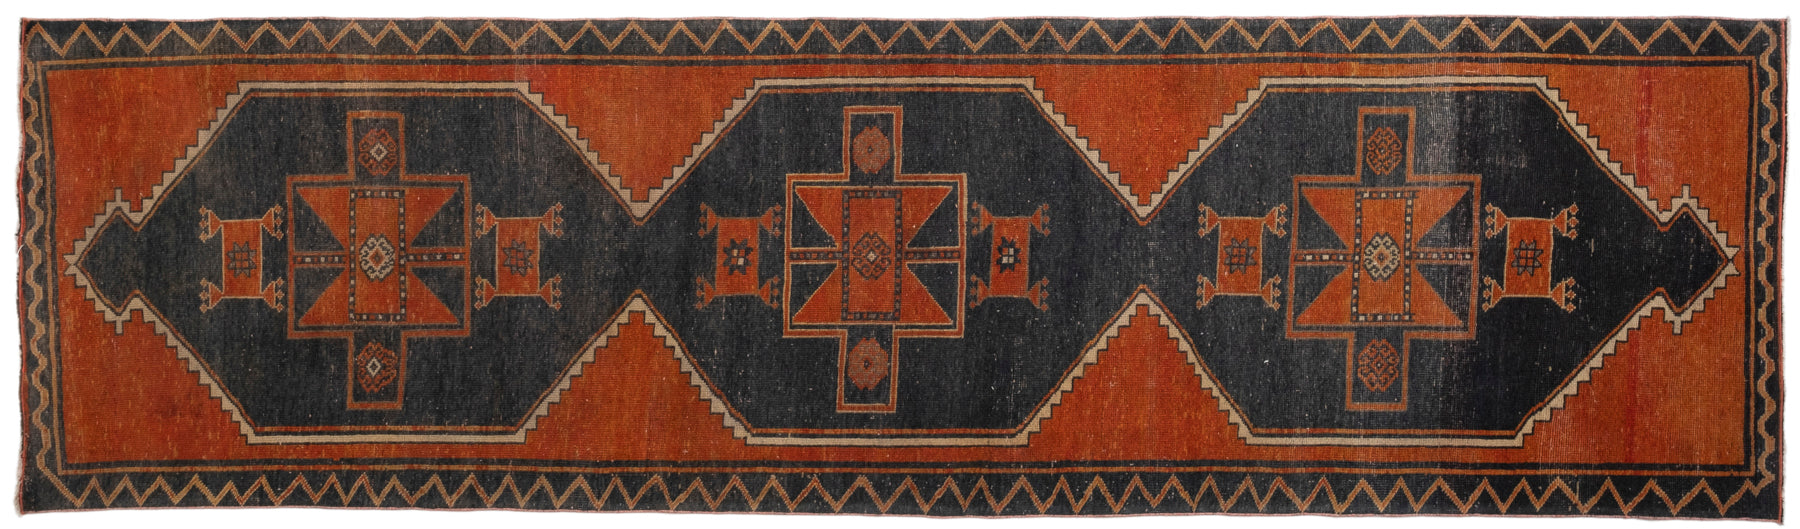 4' X 13' Vintage Turkish Rug